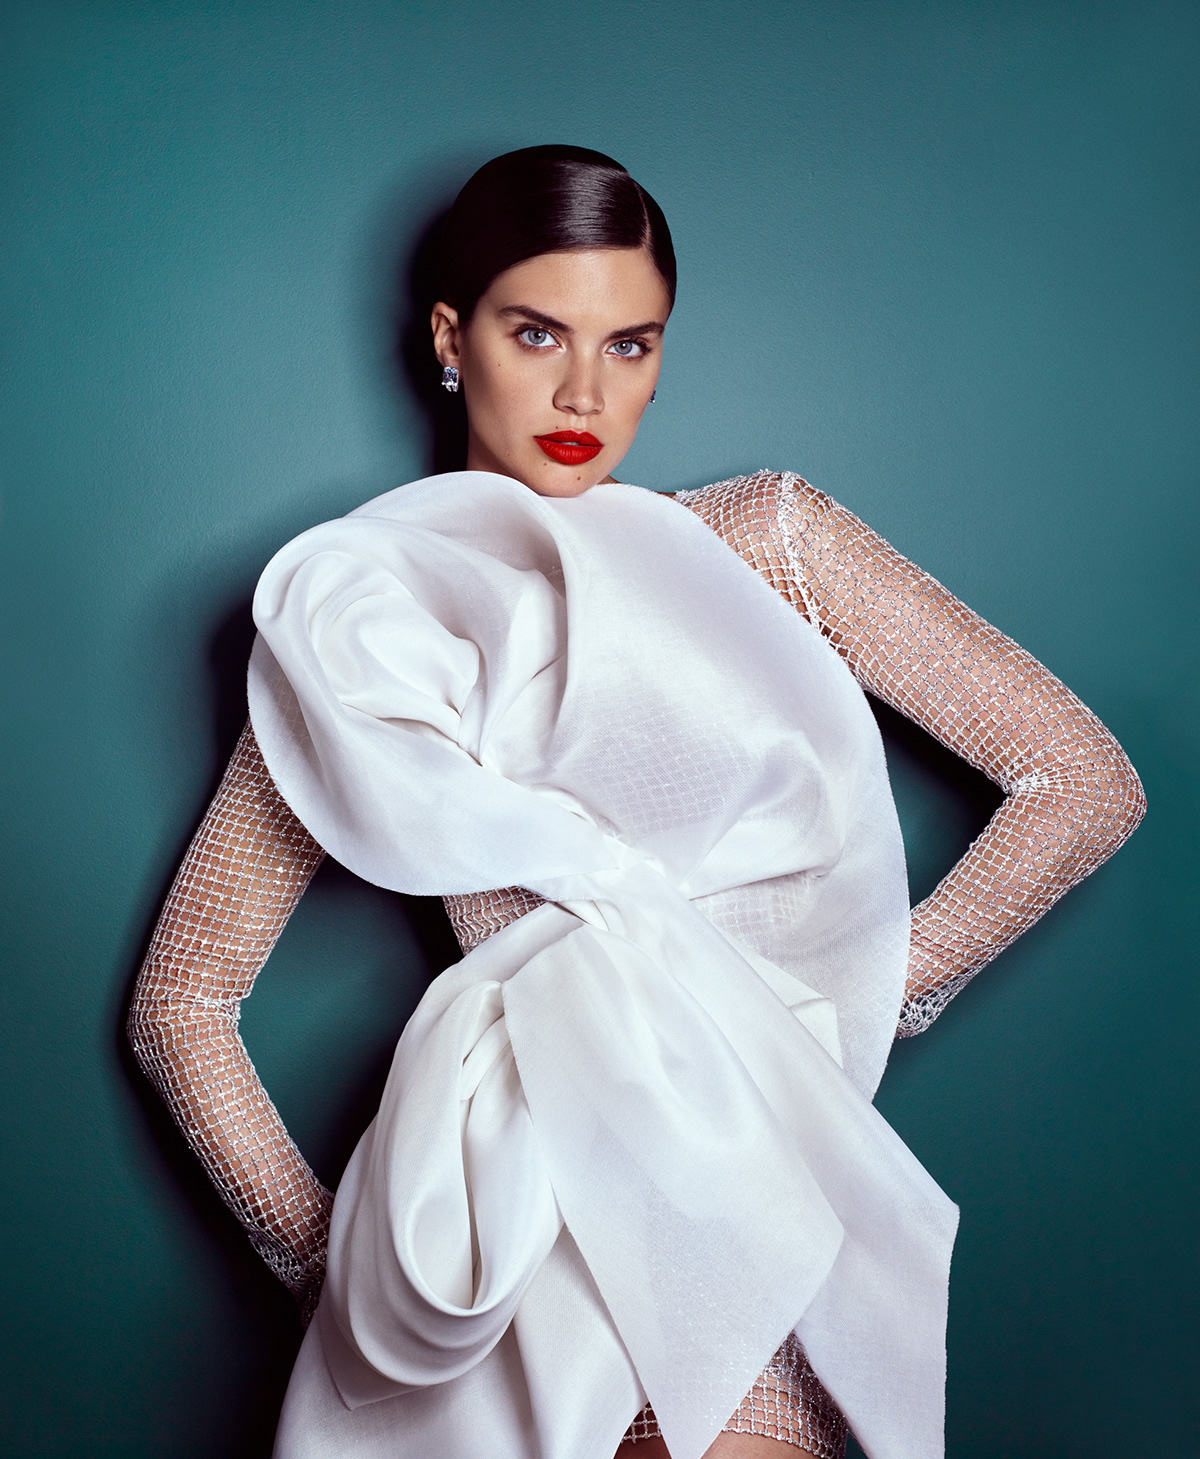 Harper's Bazaar - Sara Sampaio | Retouch on Behance